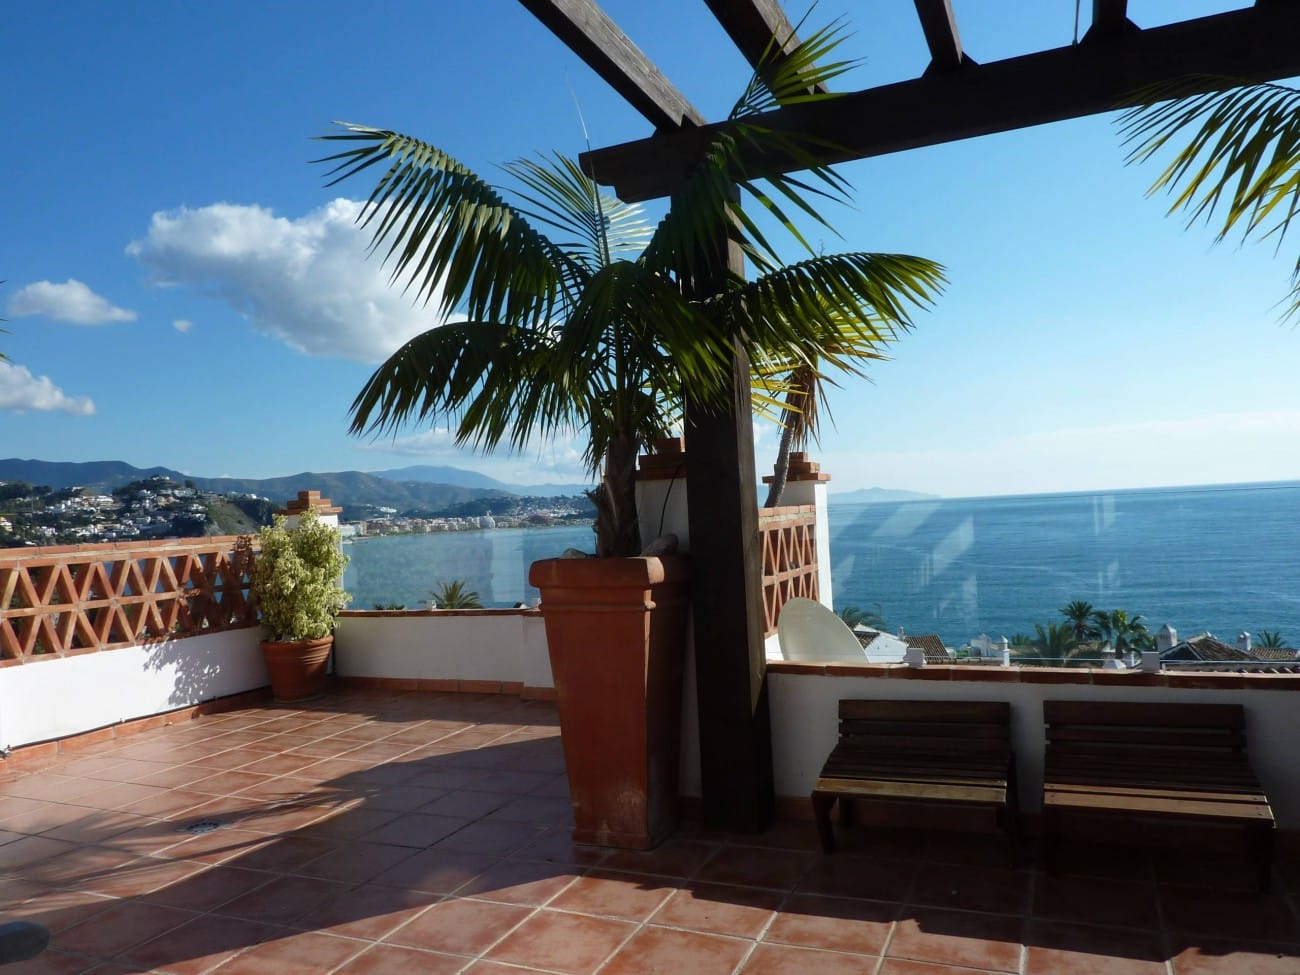 Zeezicht en terras van resale huis in La Herradura (04649) in Spanje, gelegen aan de  Costa de Almería